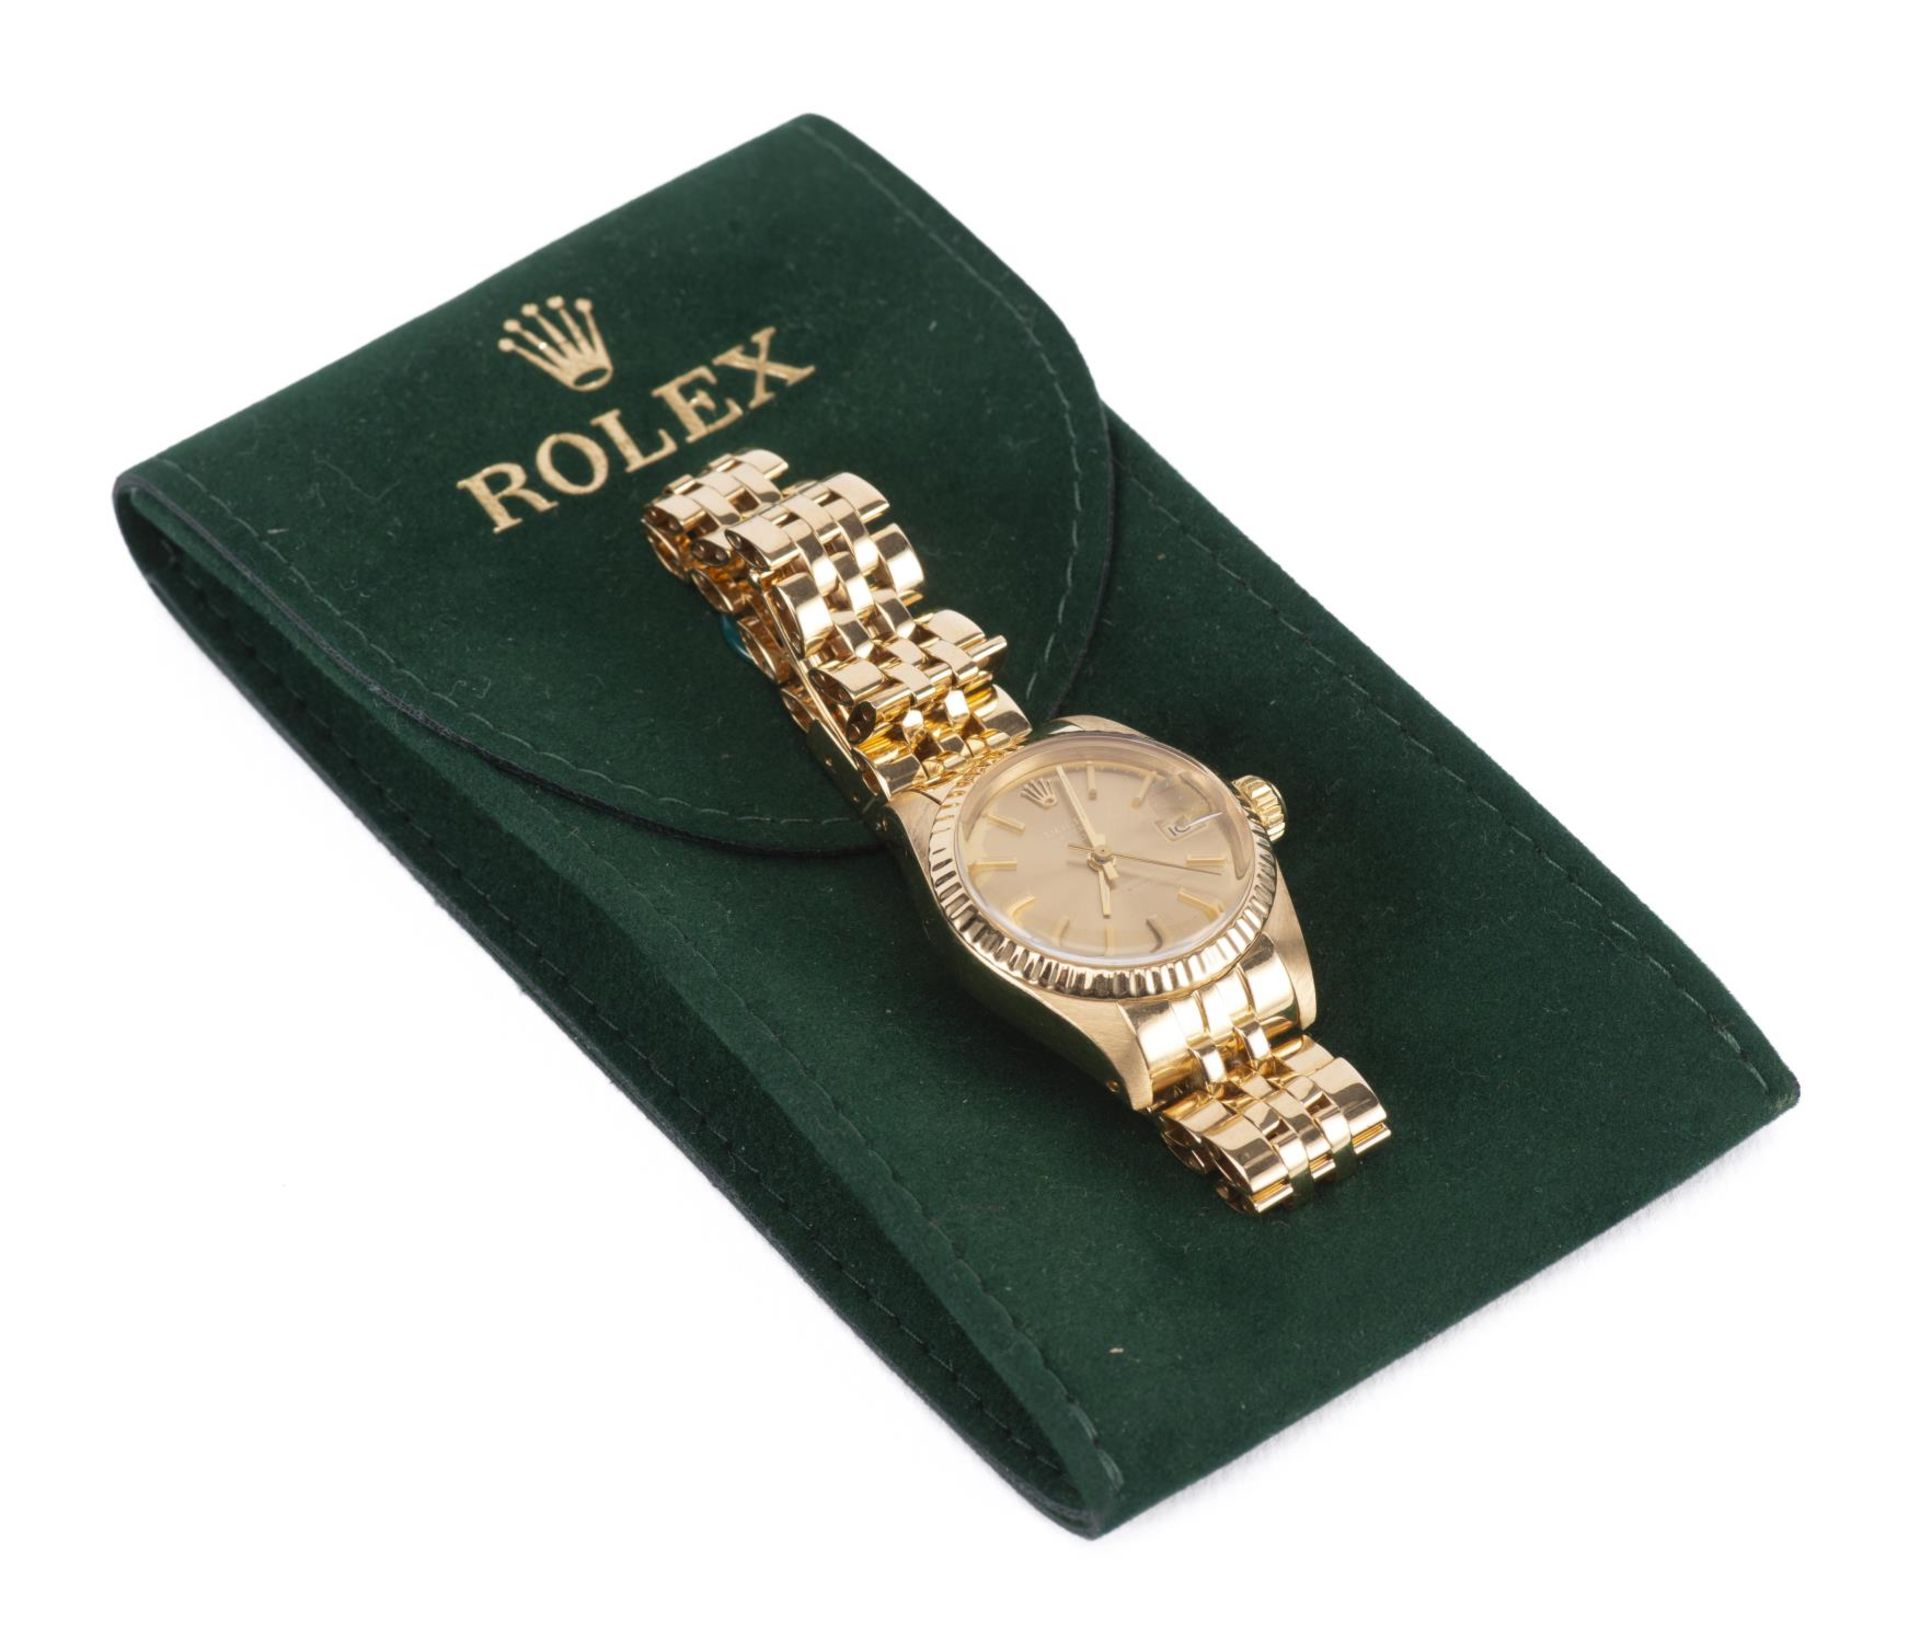 Rolex Oyster Perpetual Lady Datejust automatic, montre-bracelet de dame avec bracelet [...] - Image 4 of 4